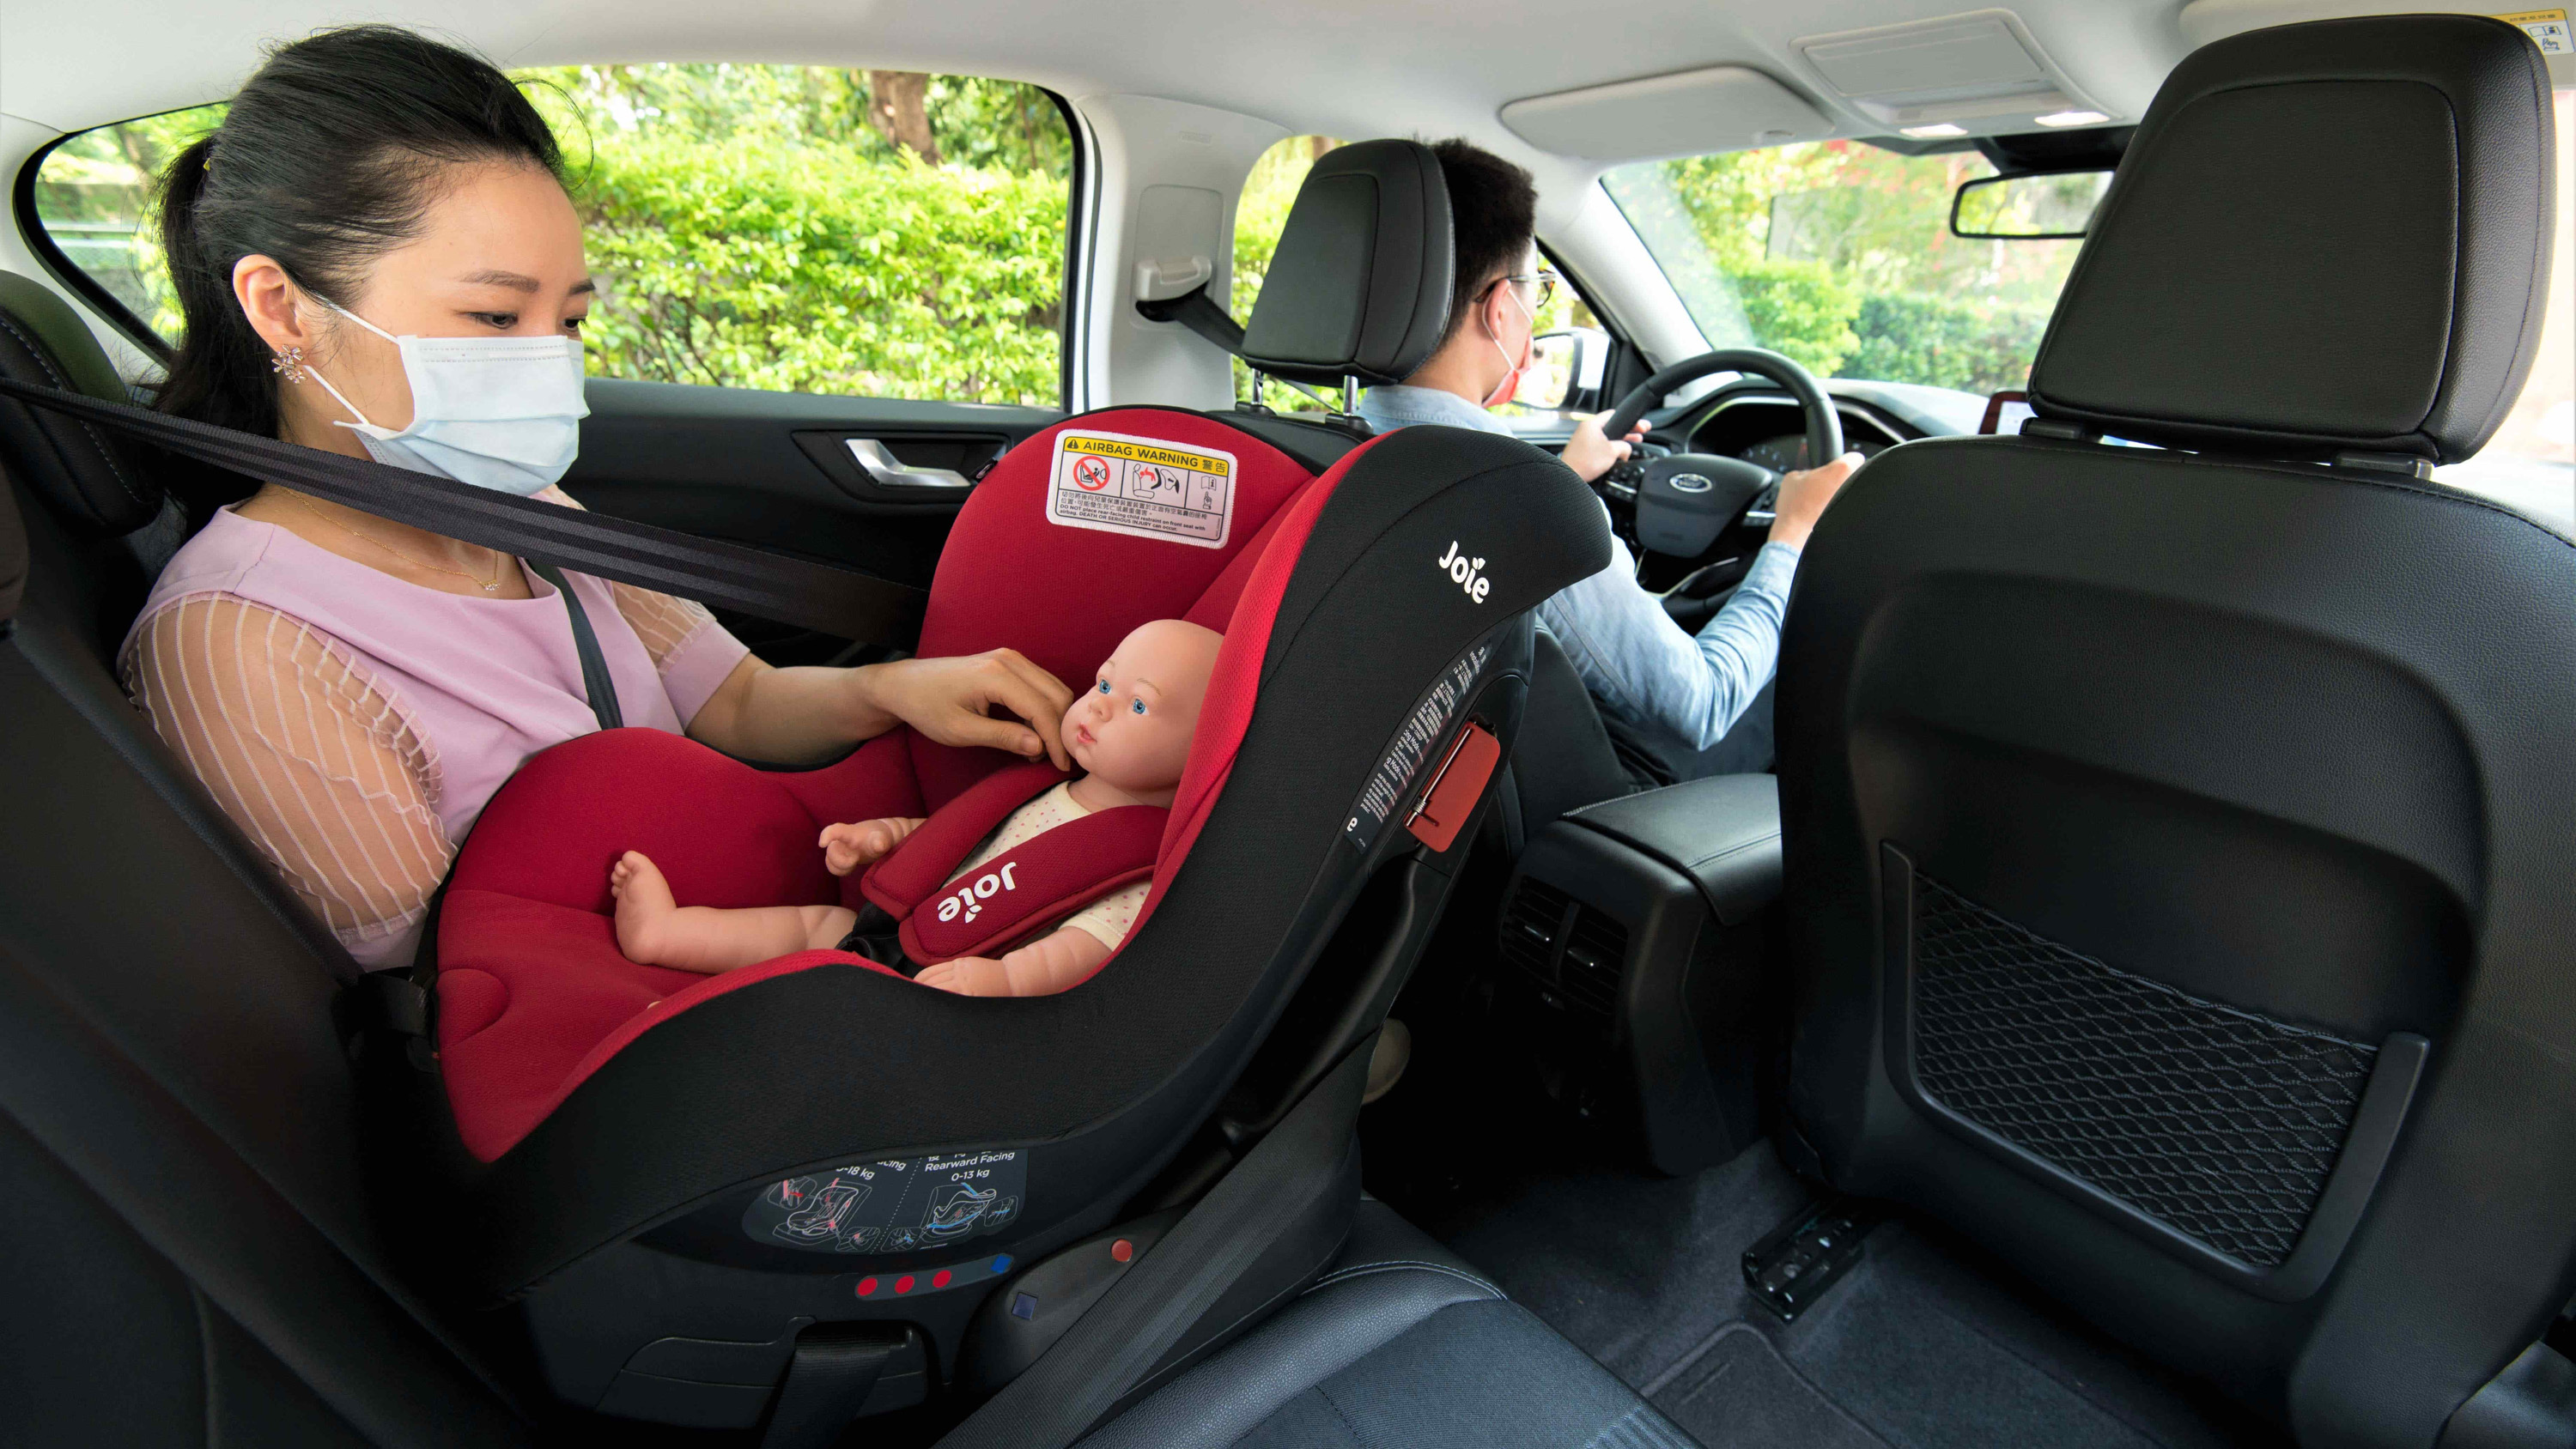 ▲ 開車出門「孩」是坐好最安全　Ford 呼籲養成正確觀念確保孩童乘車安全